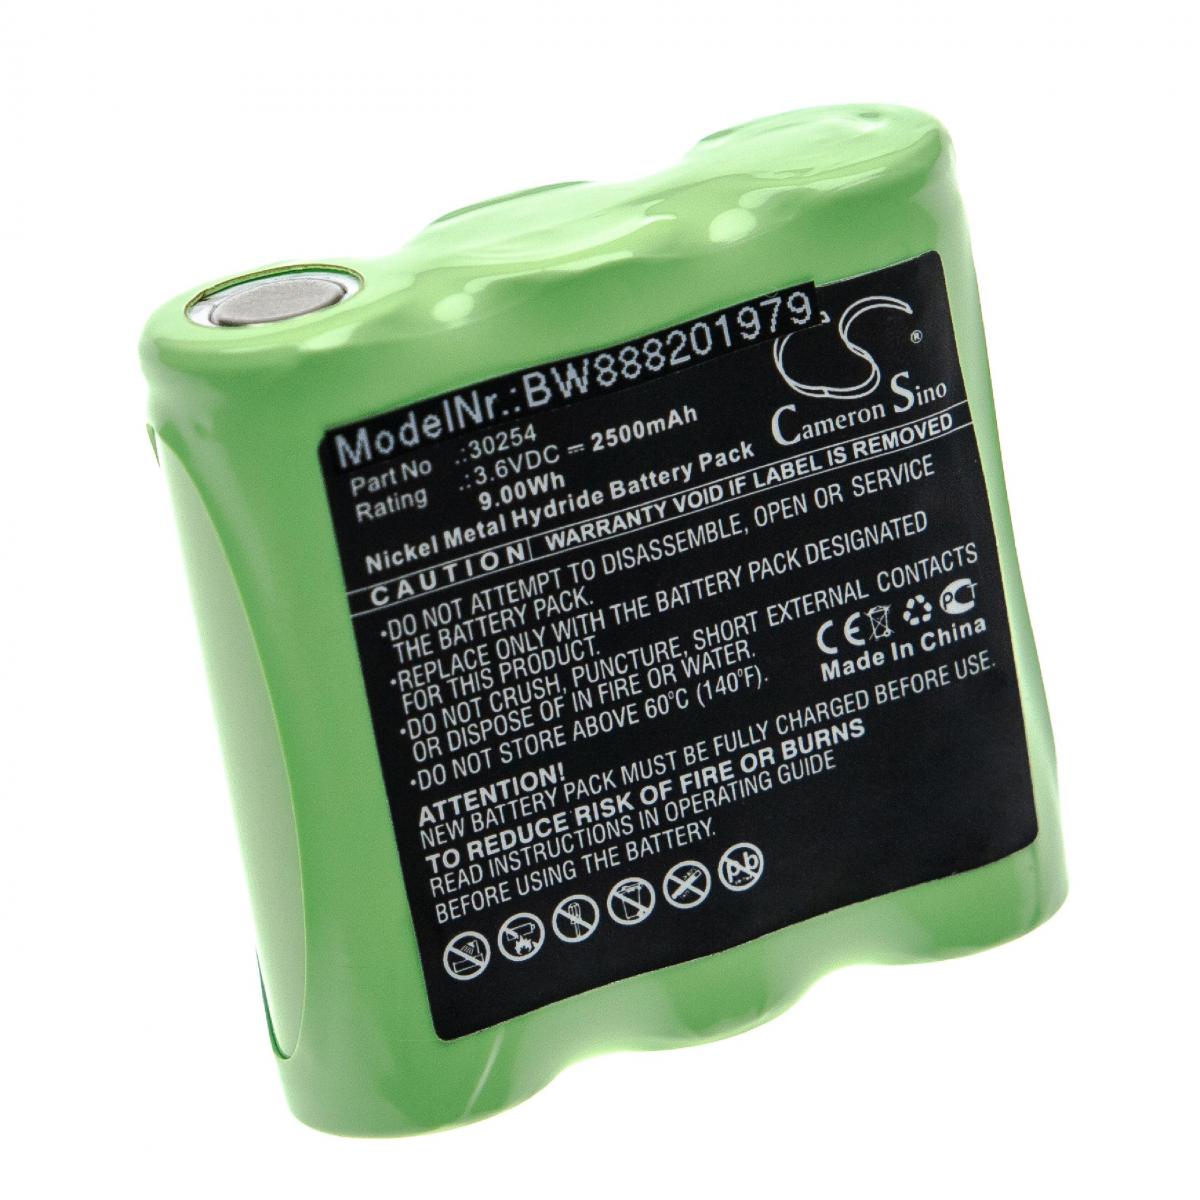 Vhbw - vhbw Batterie remplace Deviser 30254 pour outil de mesure (2500mAh, 3,6V, NiMH) - Piles rechargeables